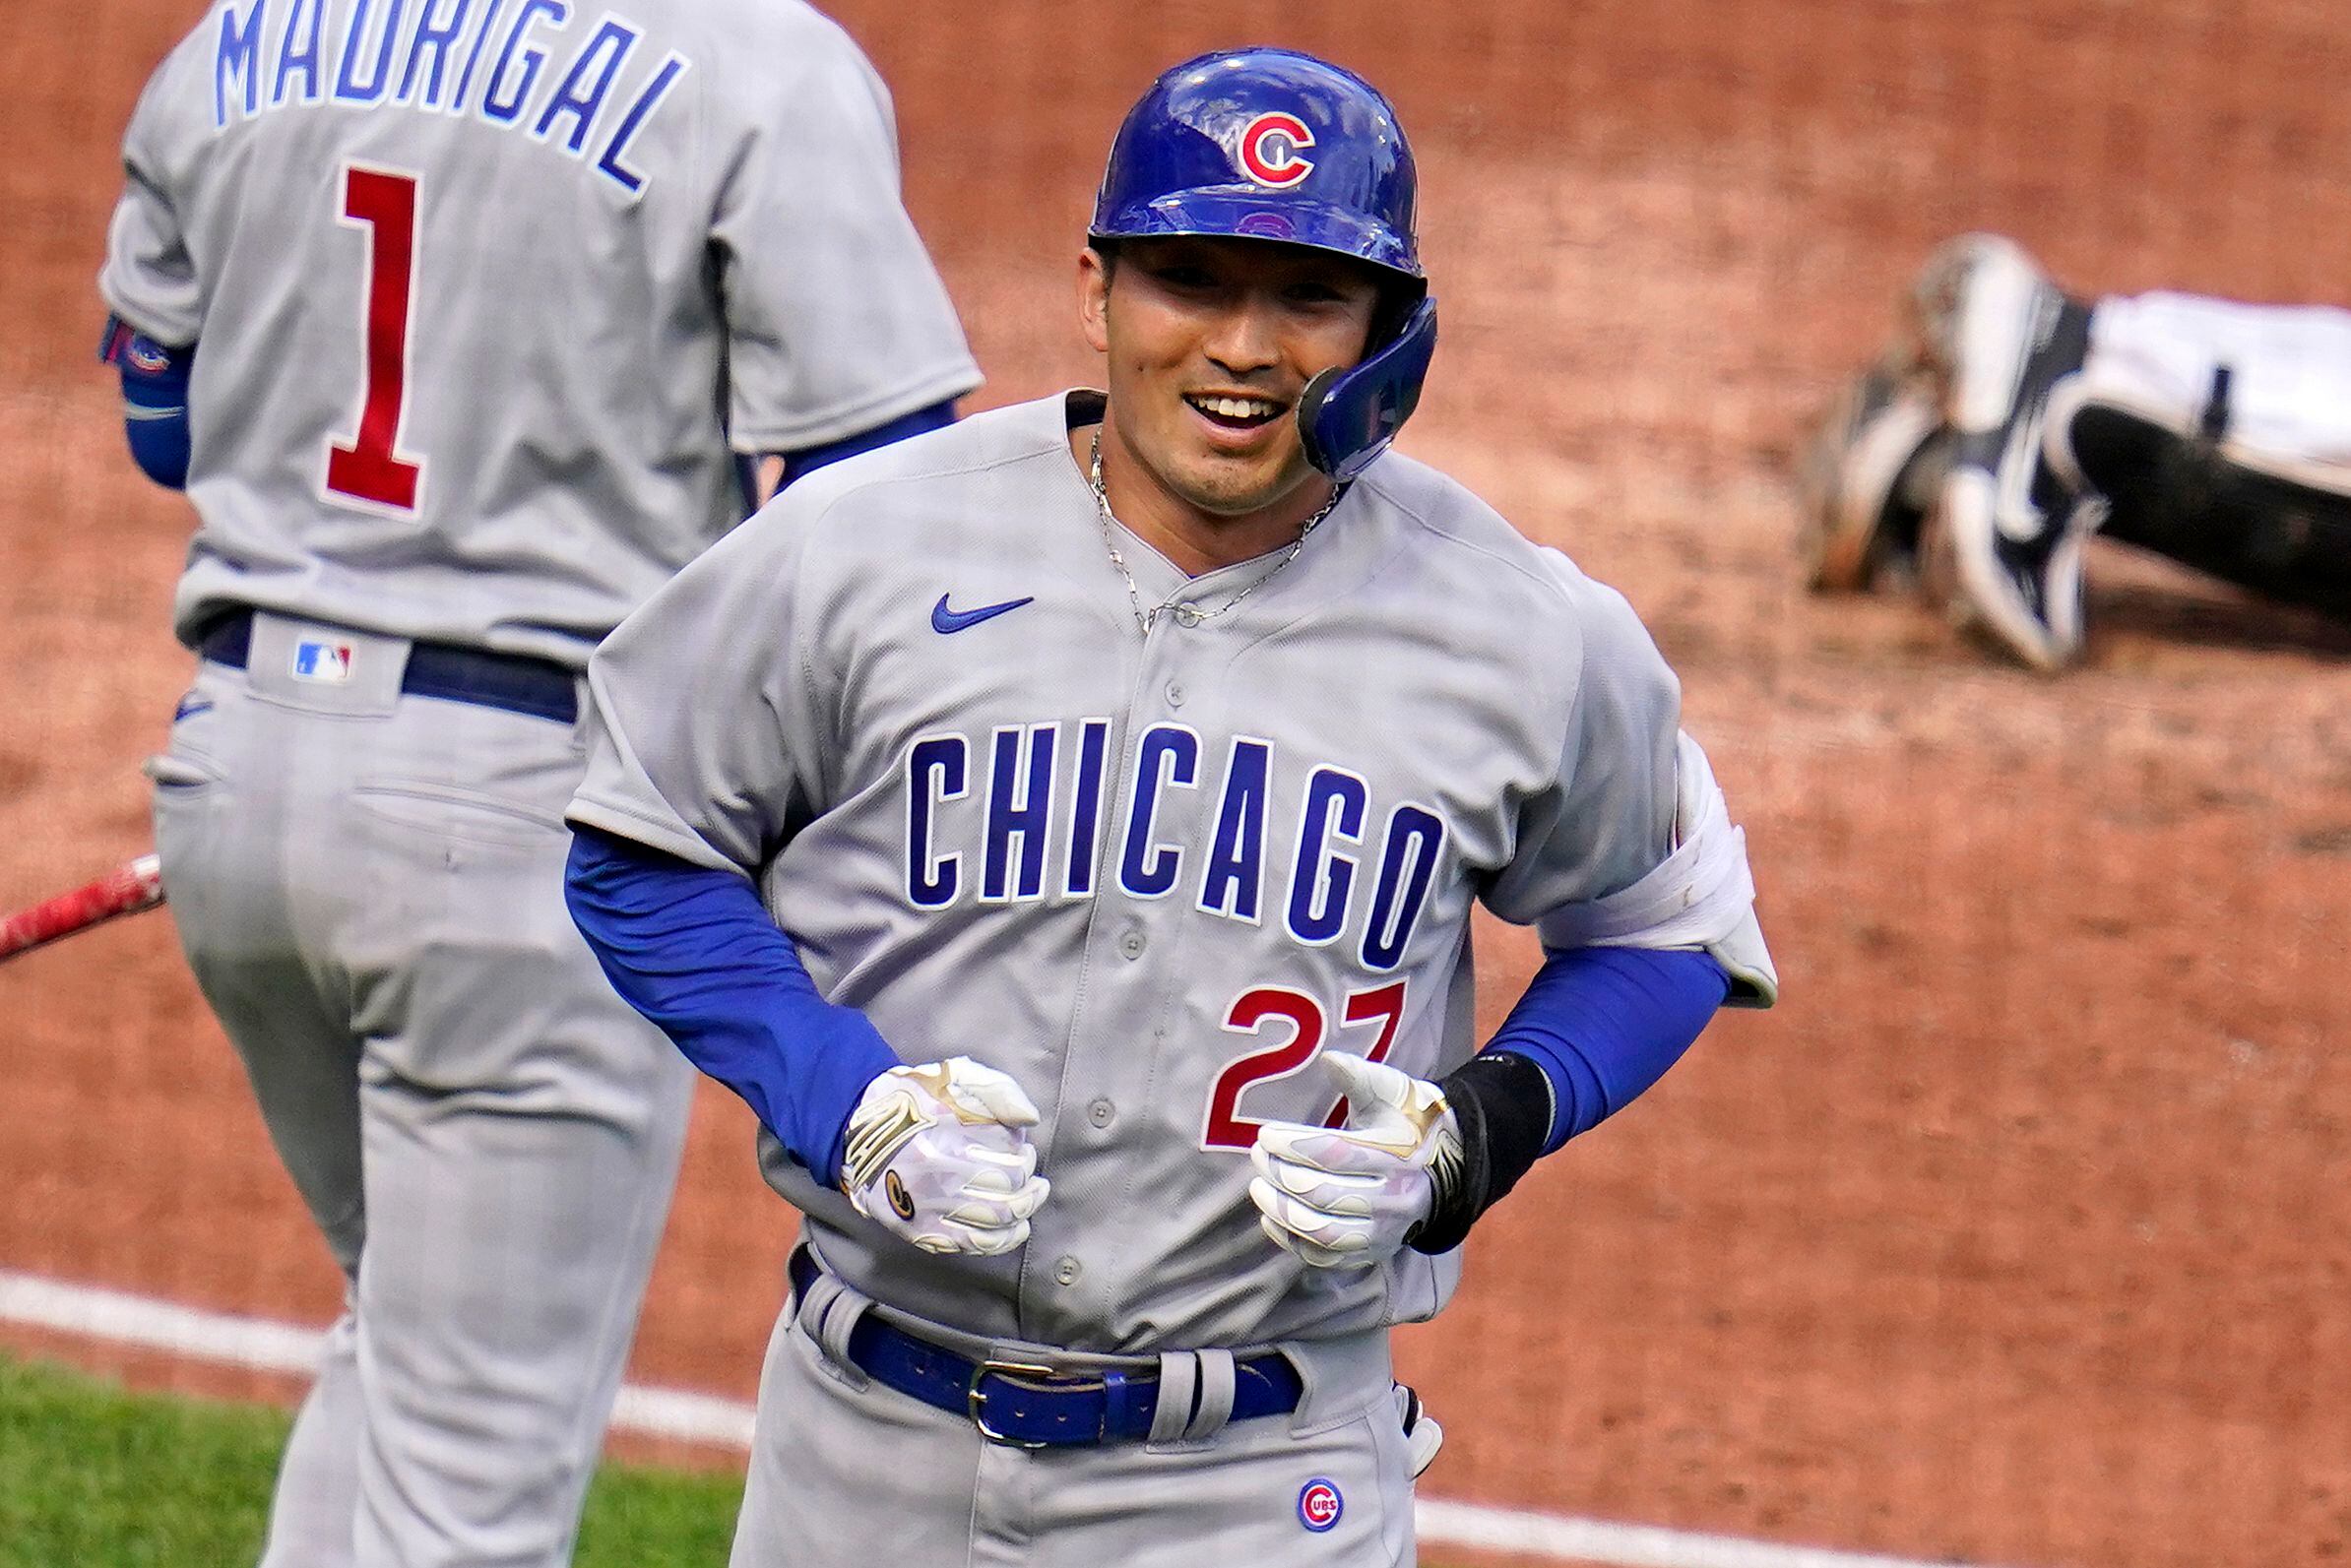 Baseball: Seiya Suzuki gets 2nd spring training home run for Cubs